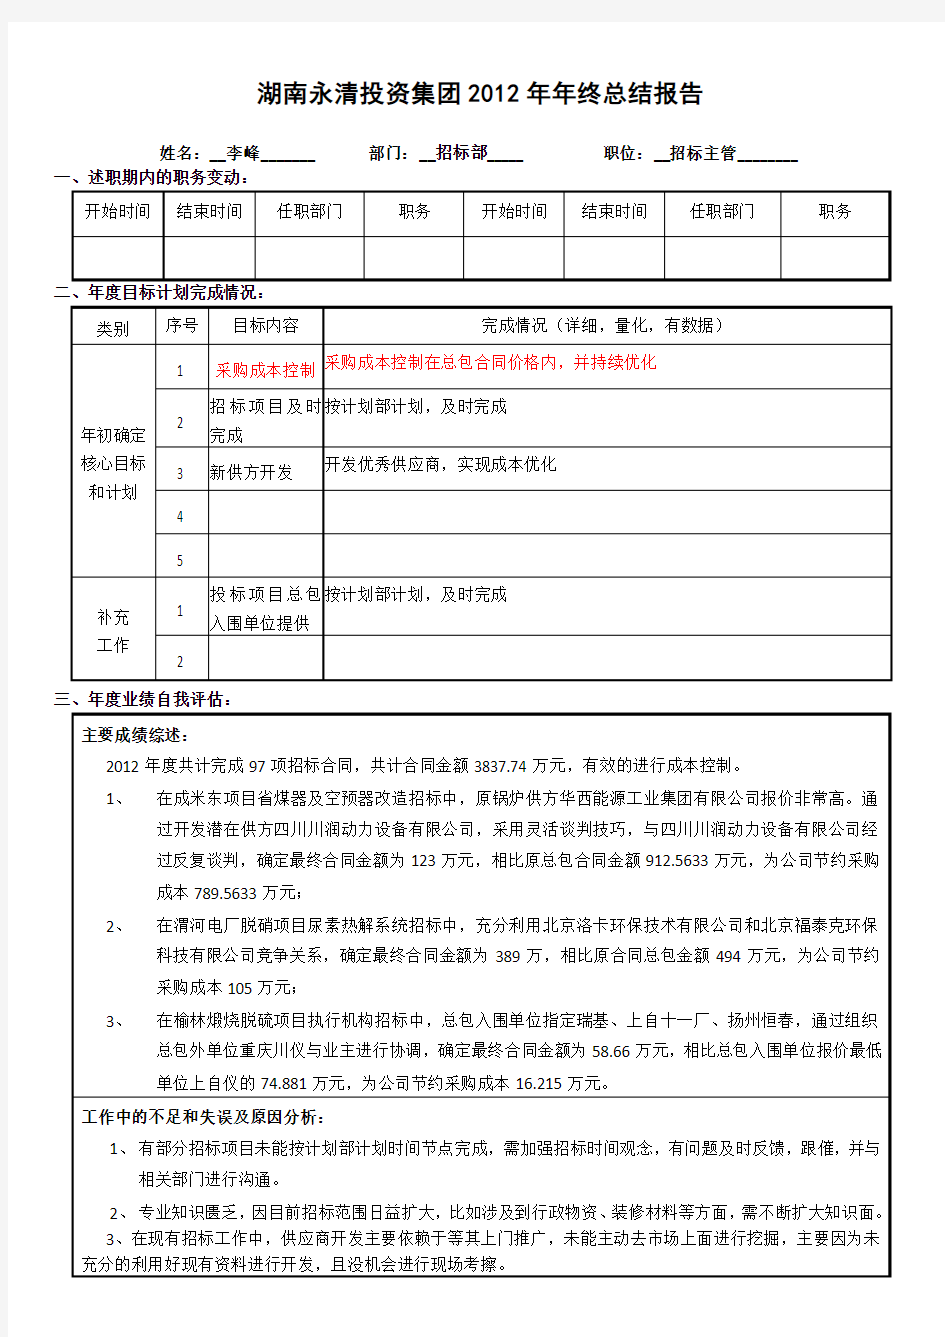 2012年度年终考核及工作述职附表1-李峰